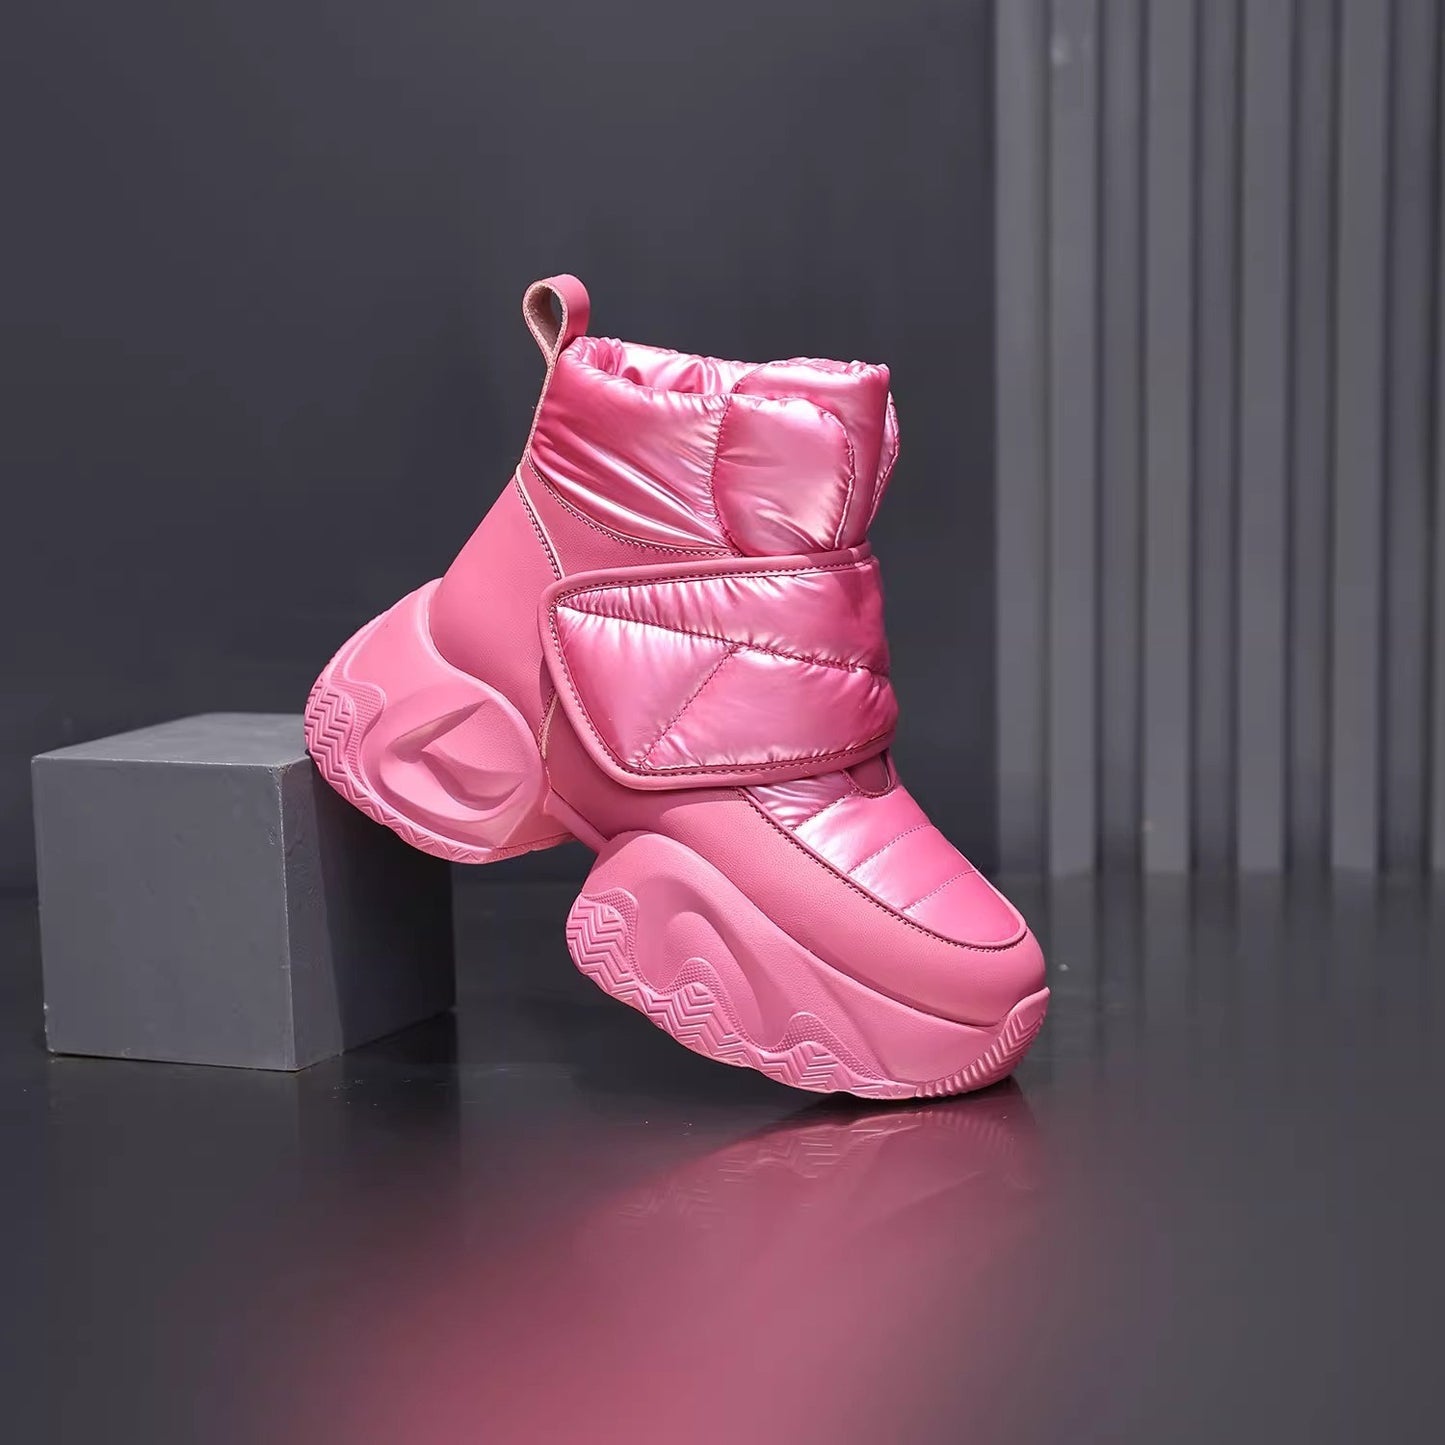 Snow Boots - Botas de terciopelo